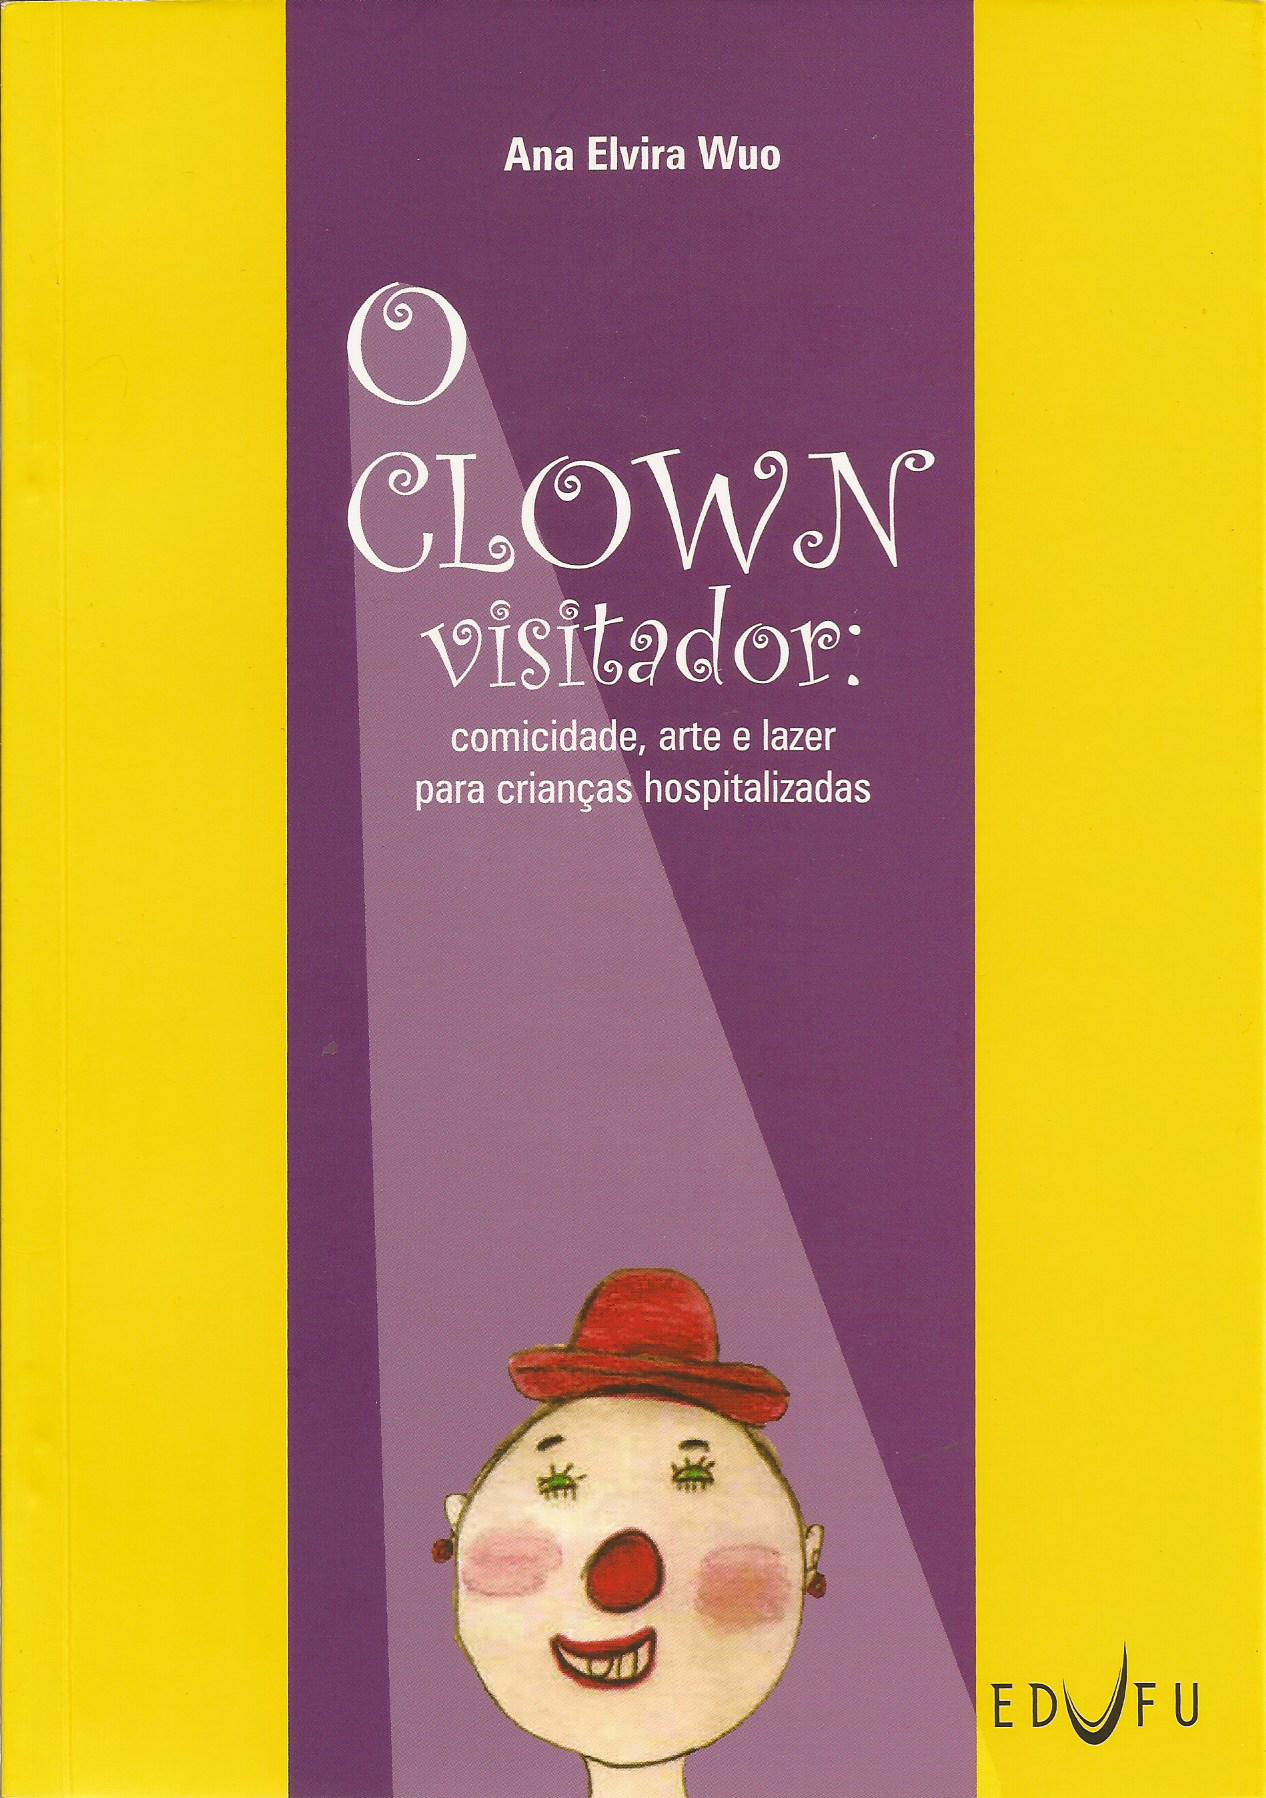 O Clown visitador: comicidade, arte e lazer para crianças hospitalizadas